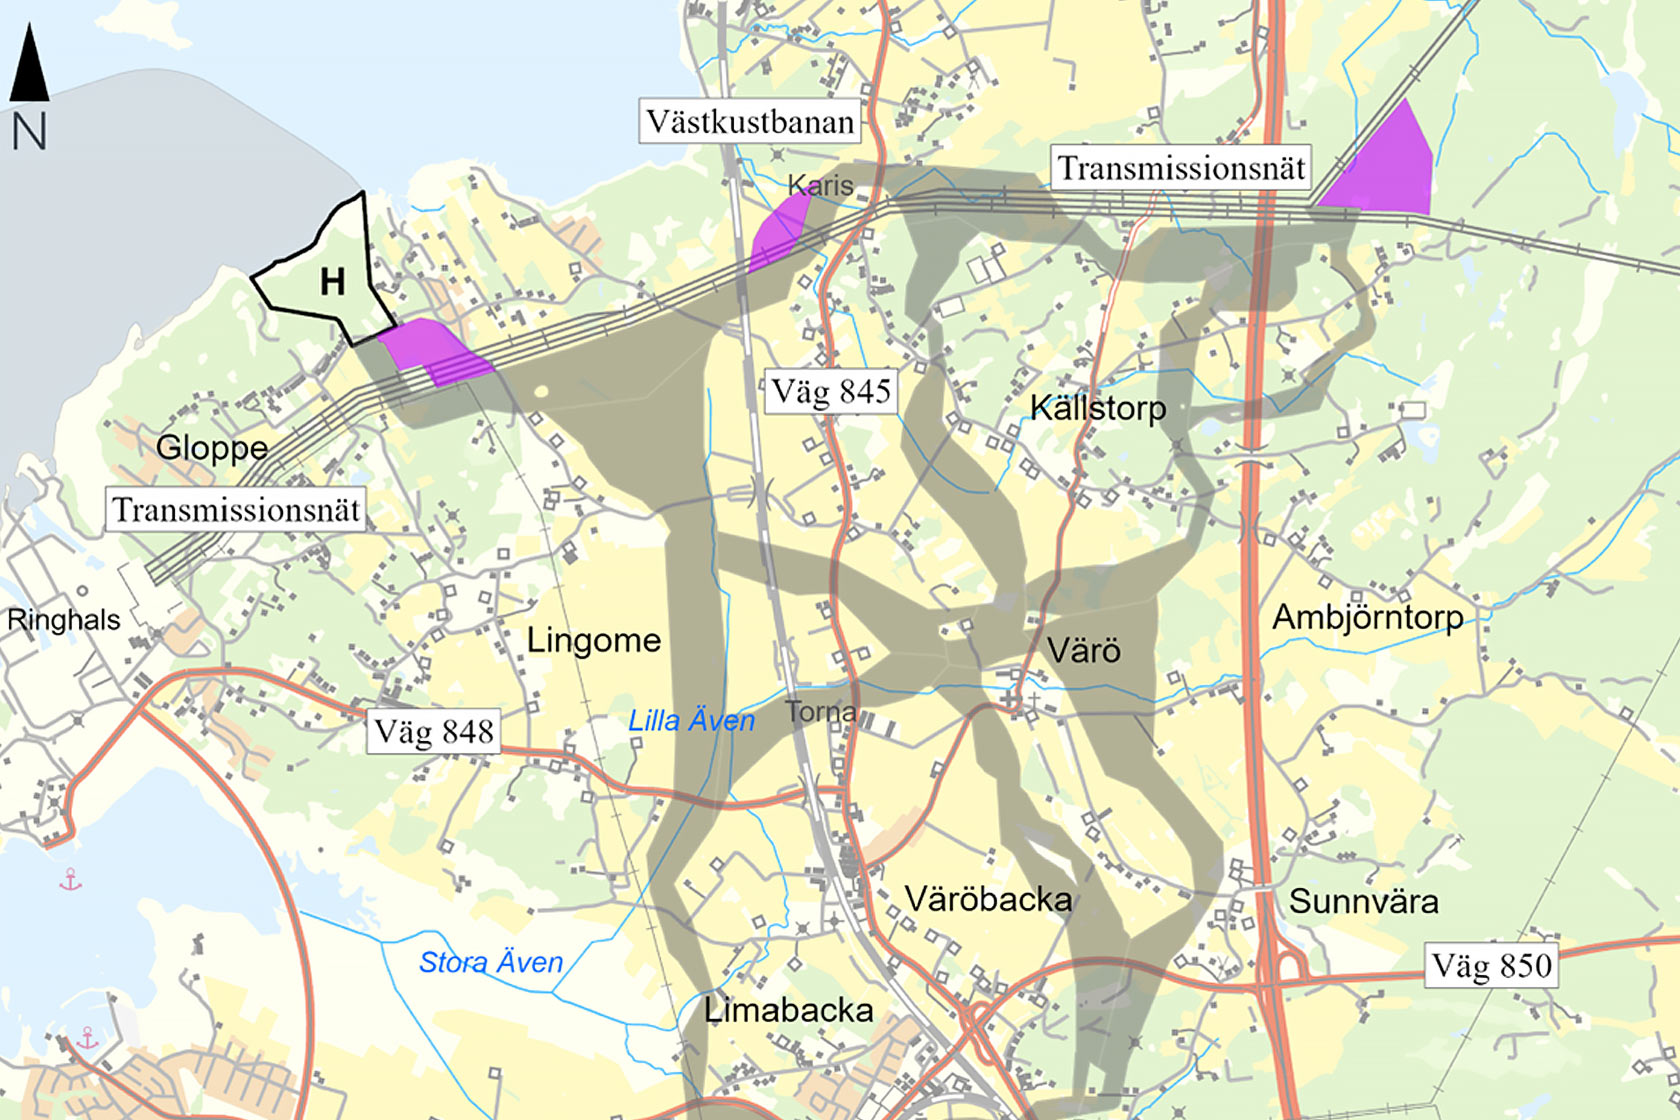 Del av karta som visar dragning av markkabel i projektet Kattegatt Syd